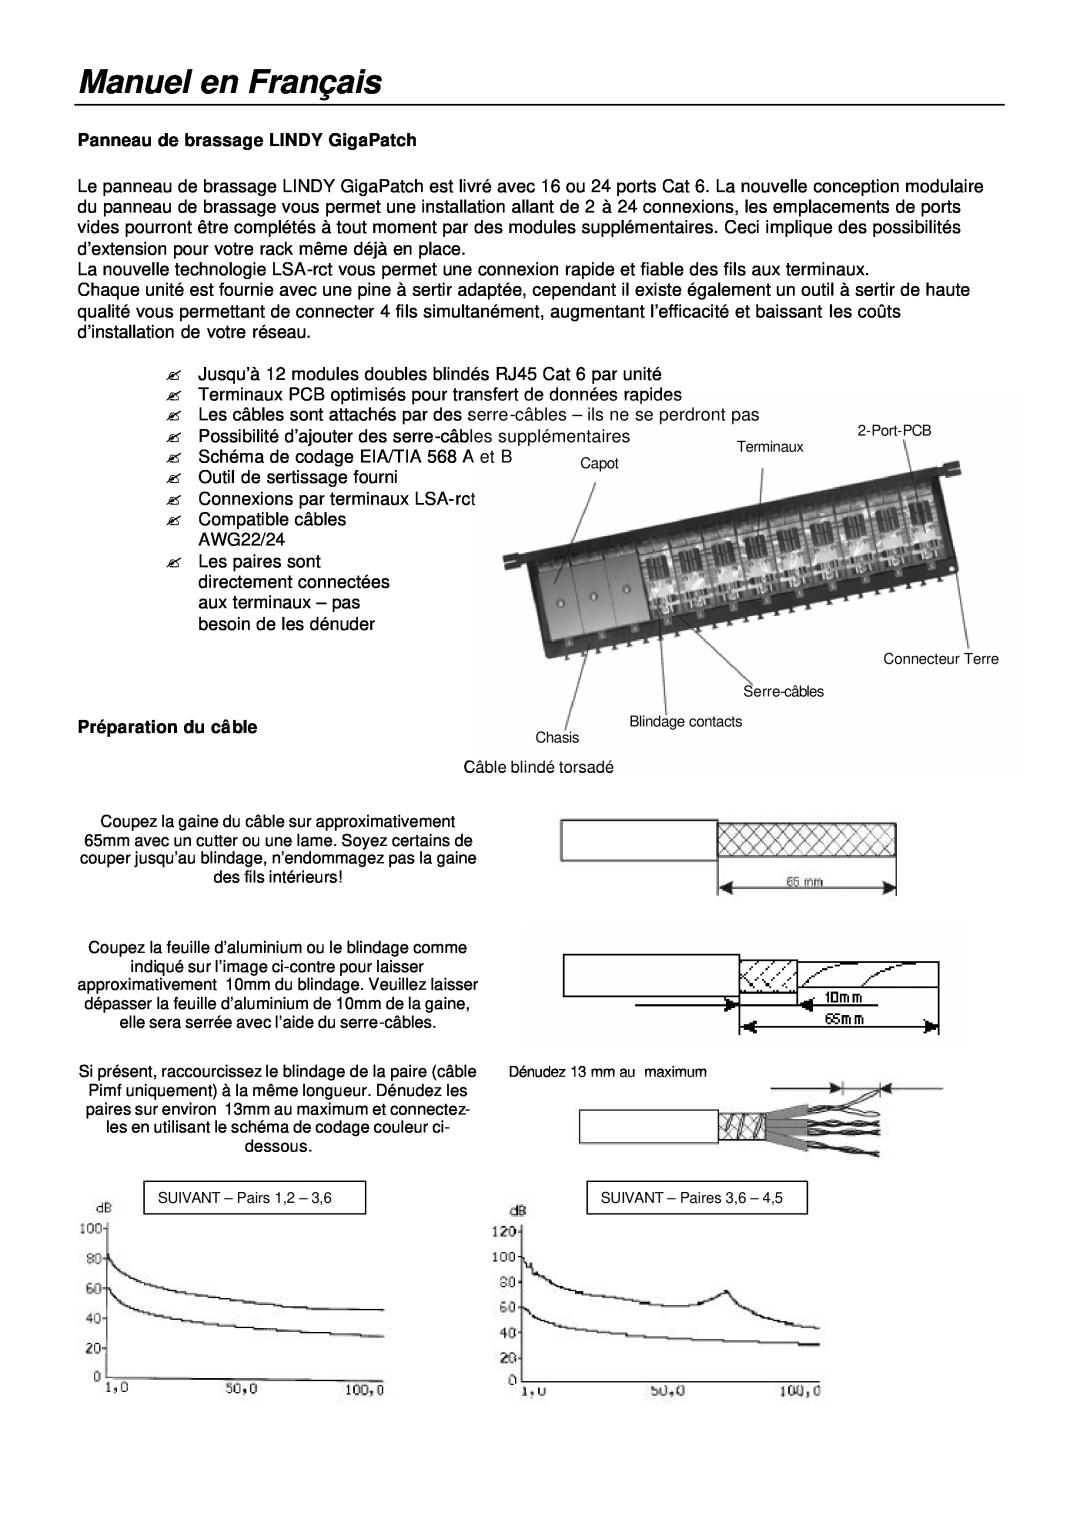 Lindy 20704, 20703 manual Manuel en Français, Panneau de brassage LINDY GigaPatch, Préparation du câble 